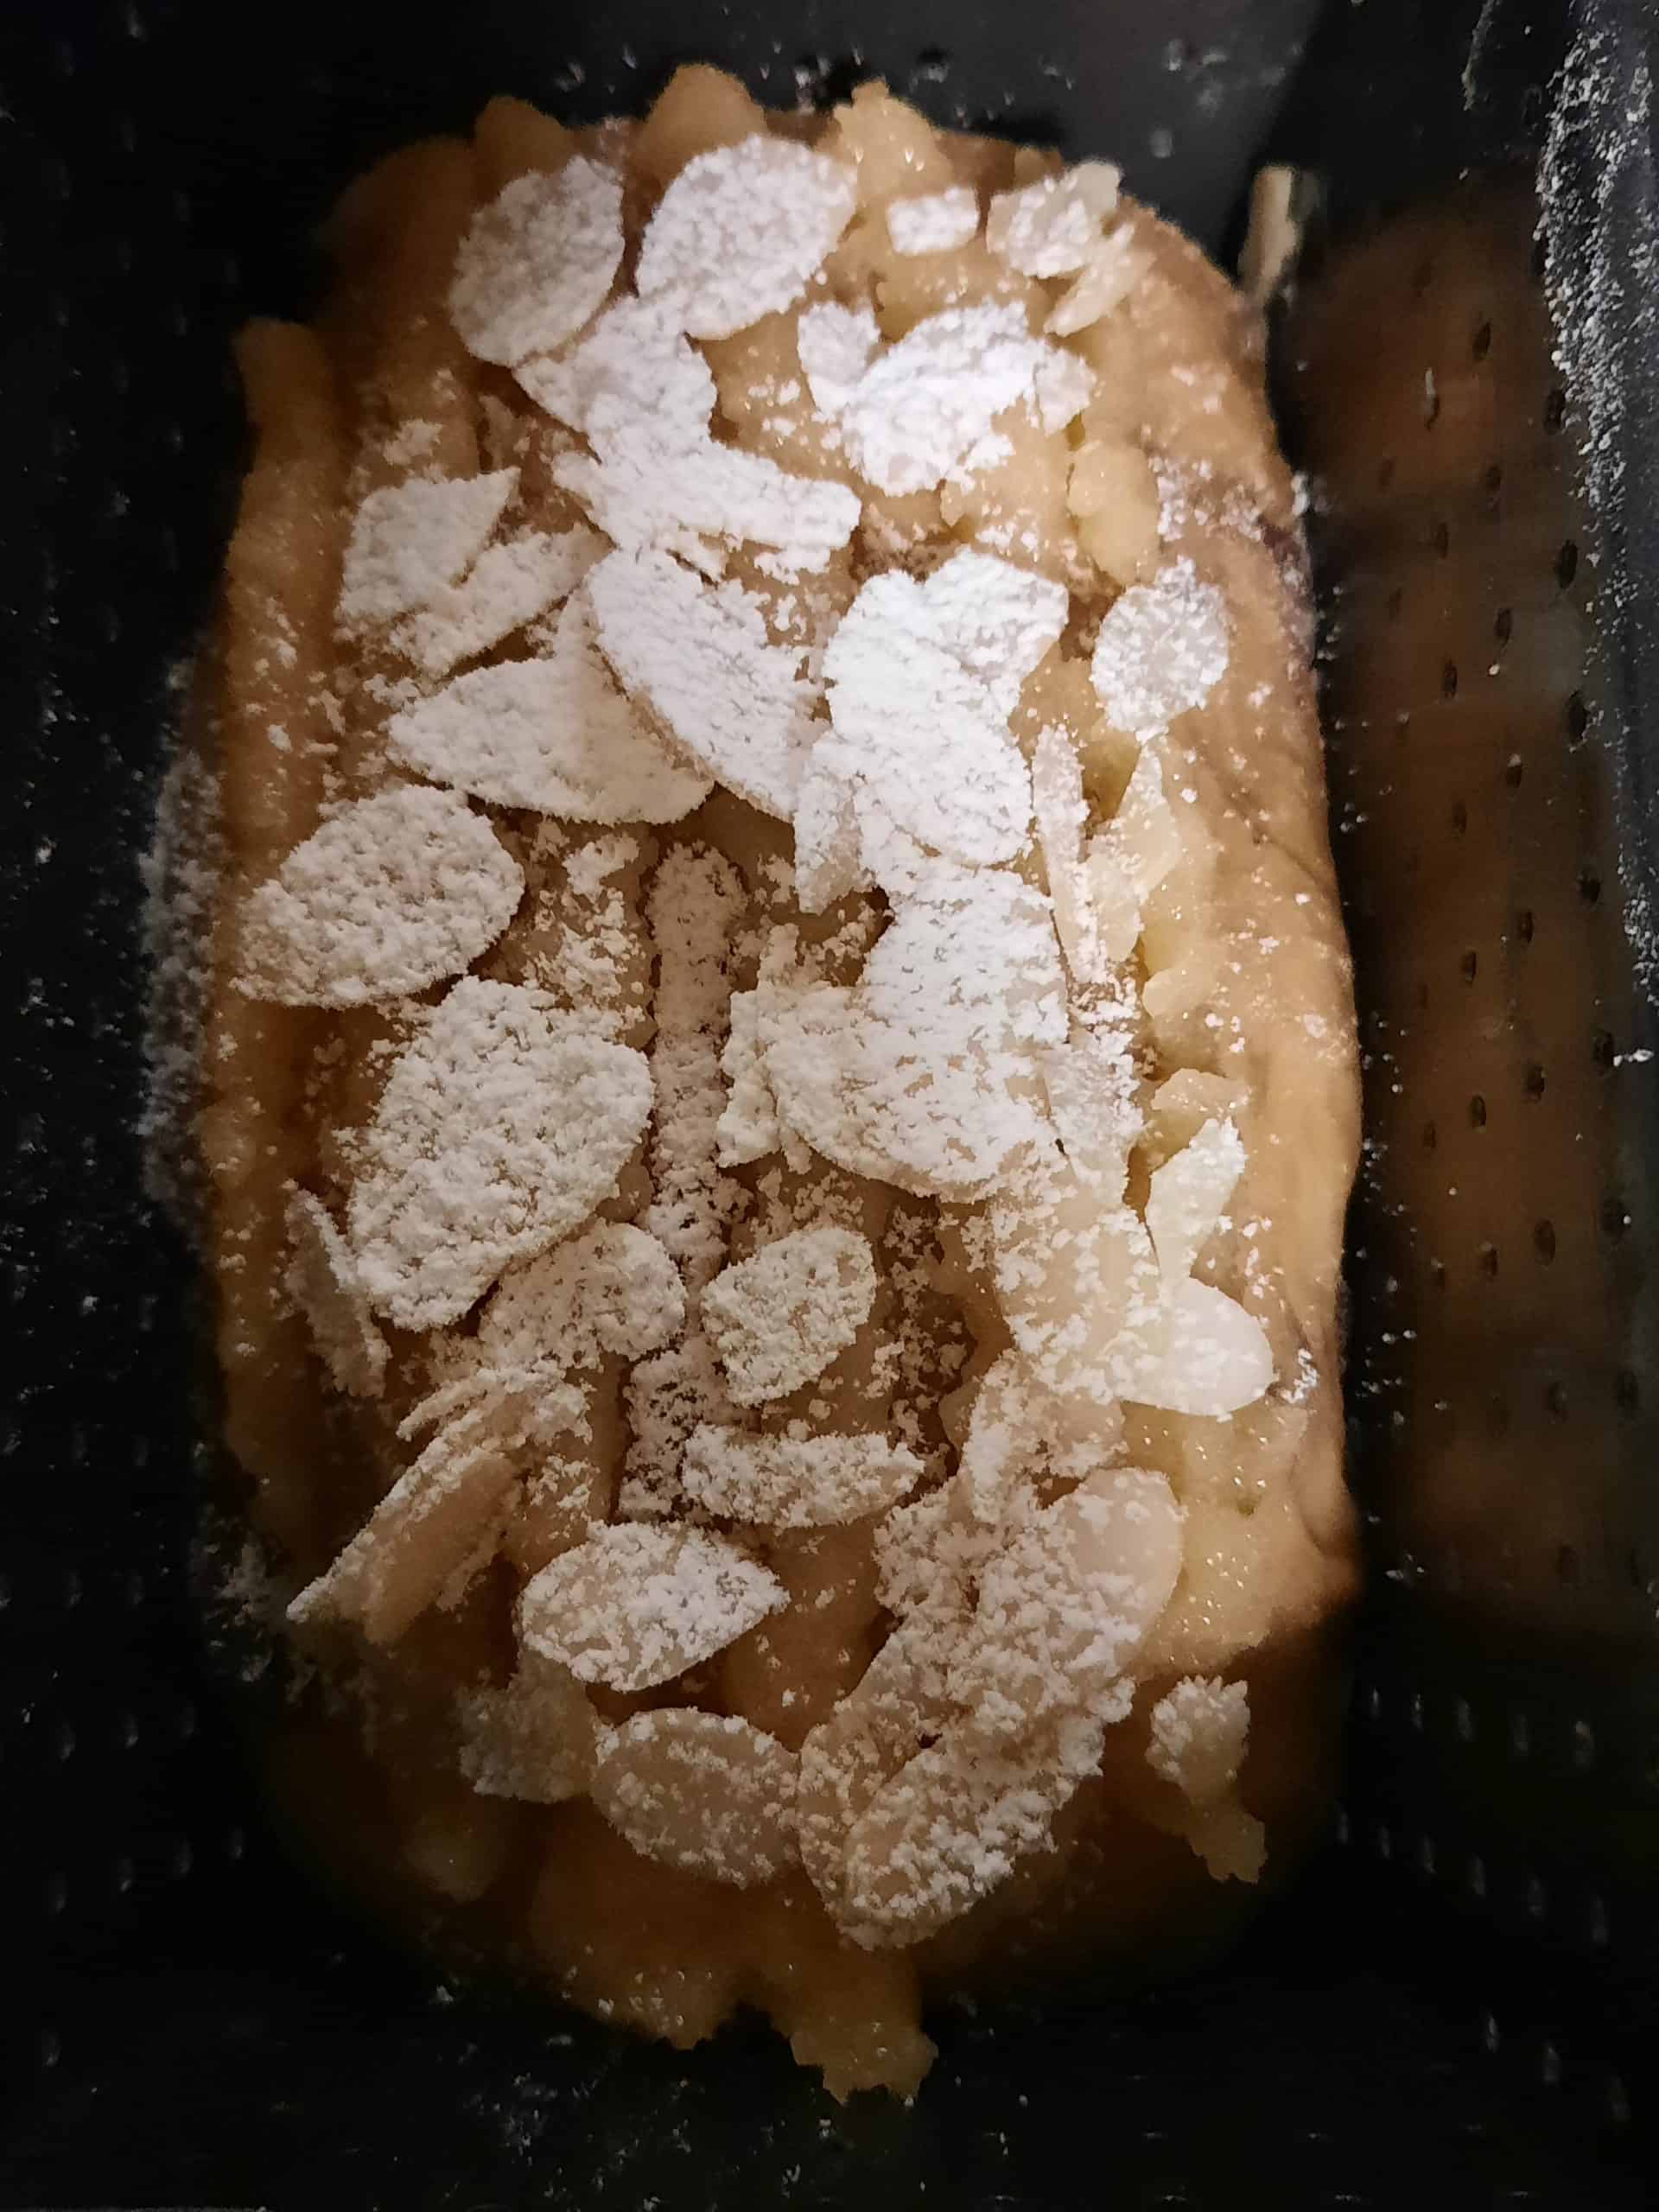 等待最後發酵到七分滿模,就可以去烘烤Wait for the final fermentation to reach seven full molds, add almond frosting and almond flakes (grain), sprinkle with powdered sugar, and bake